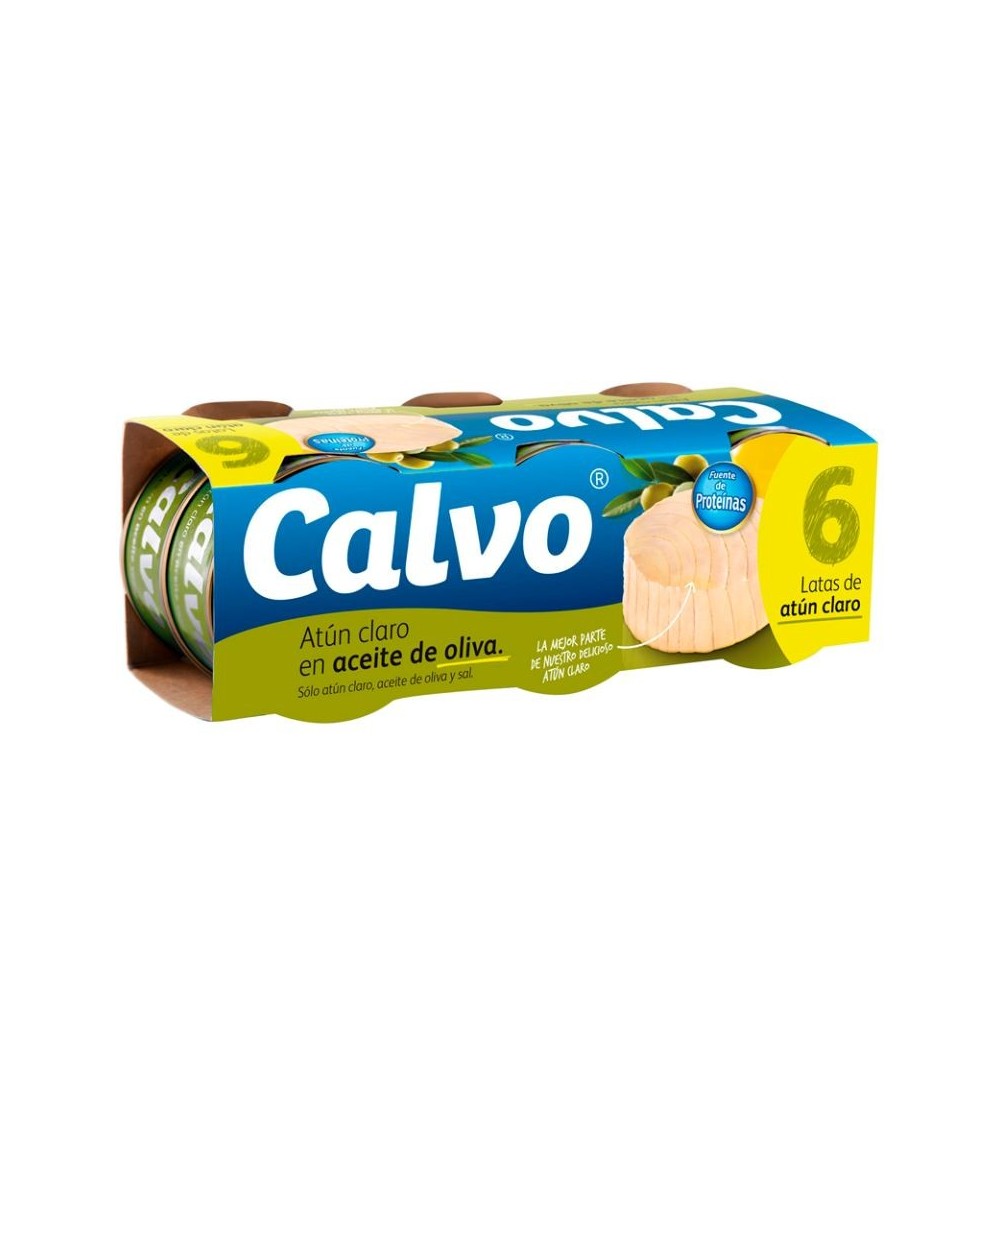 ATUN CLARO EN ACEITE DE OLIVA CALVO PACK  6x55g.